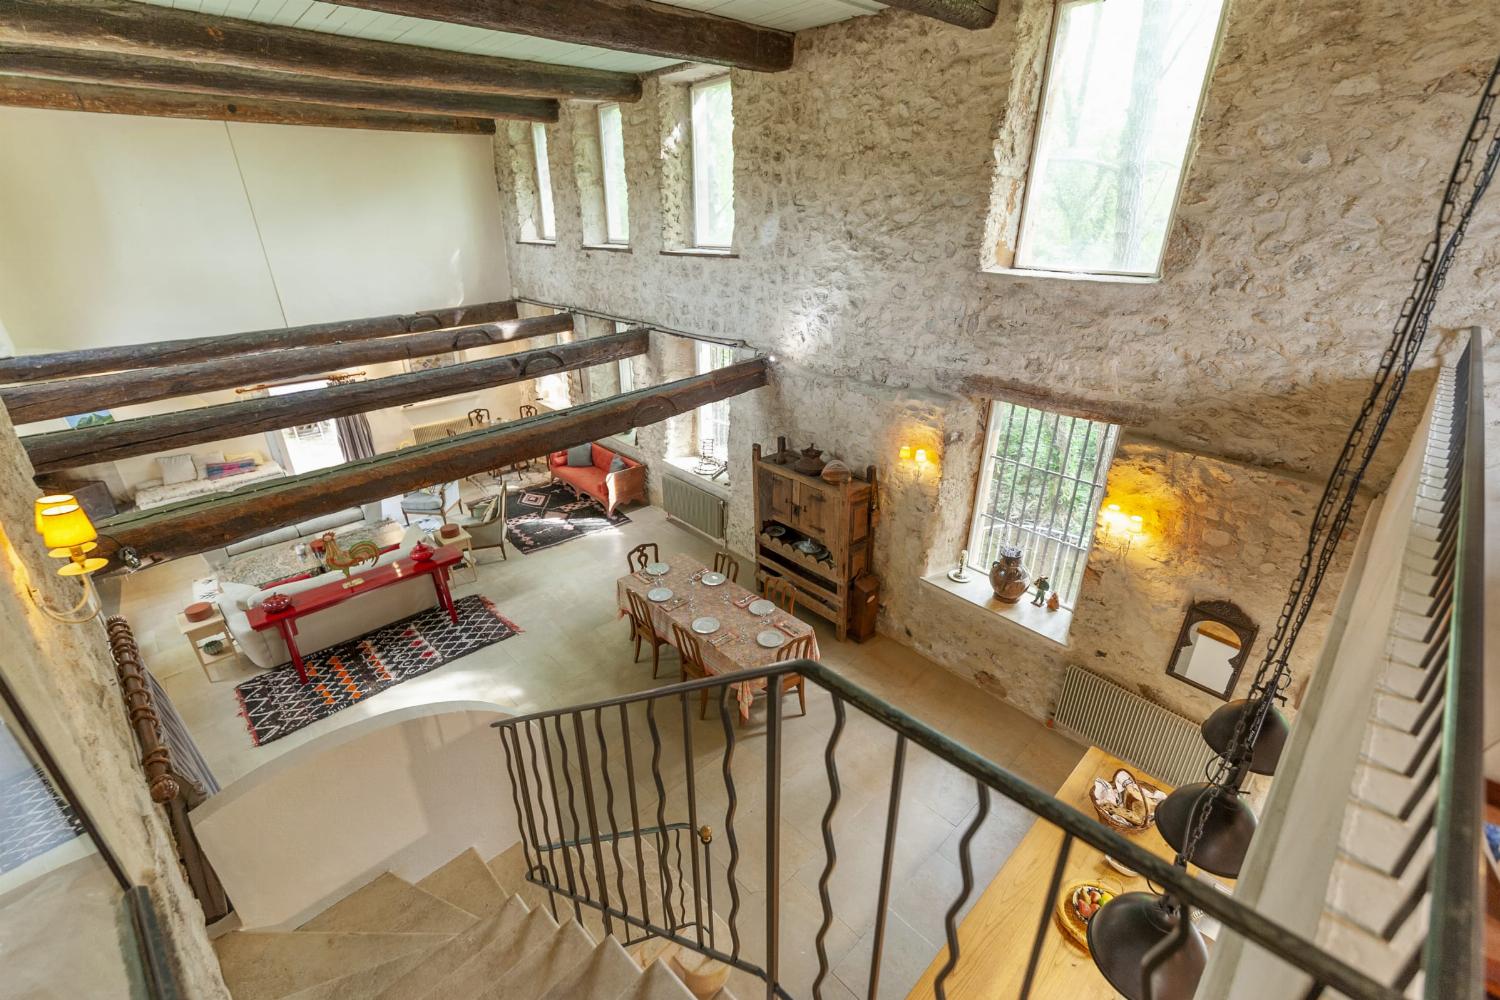 Salon | Maison de vacances dans le sud de la France